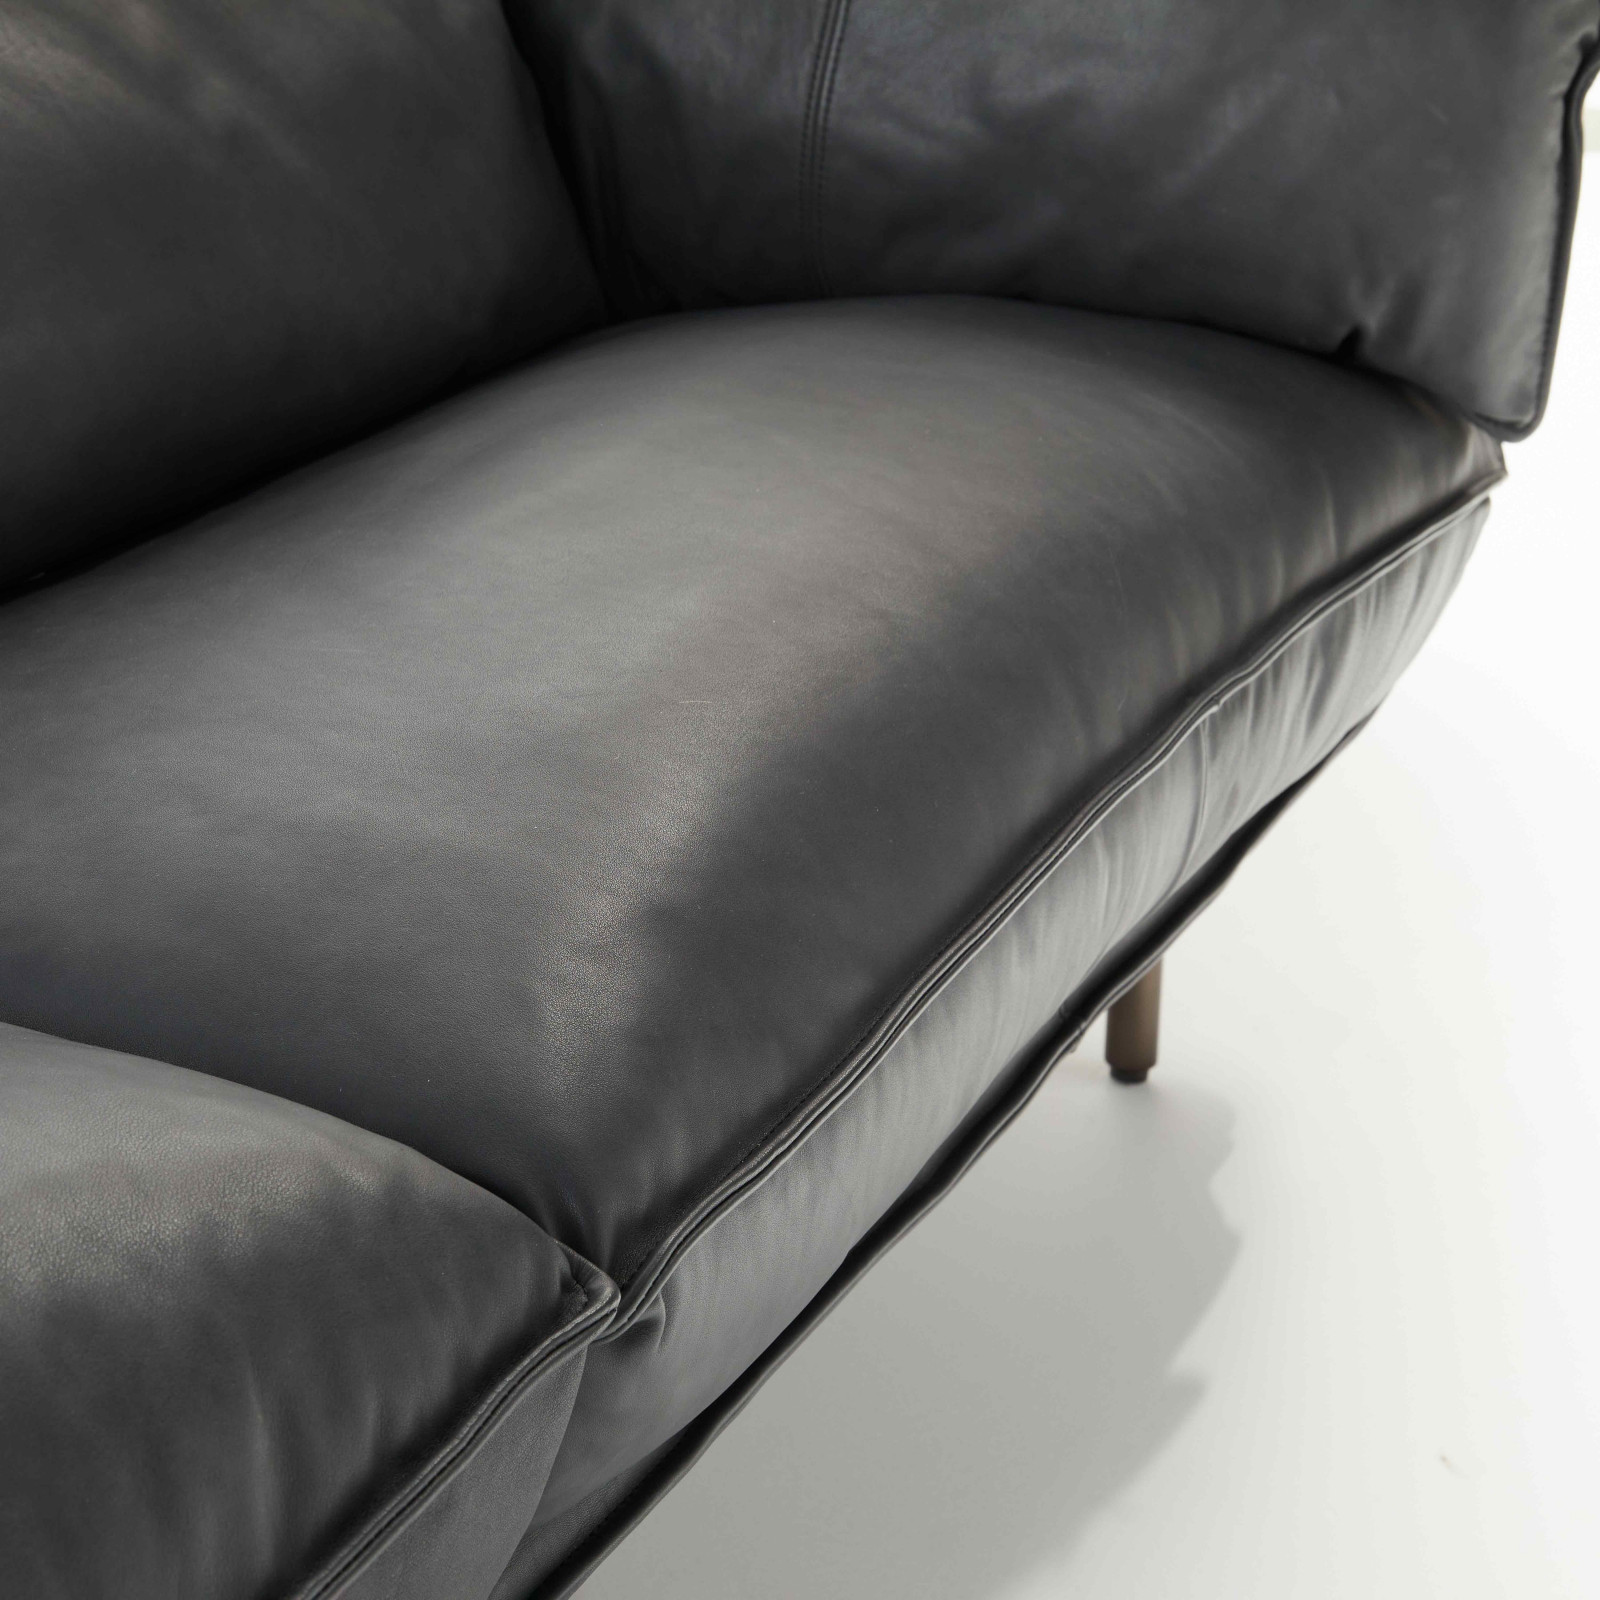 Canapé cuir : découvrez confort et qualité - Le blog de Vente